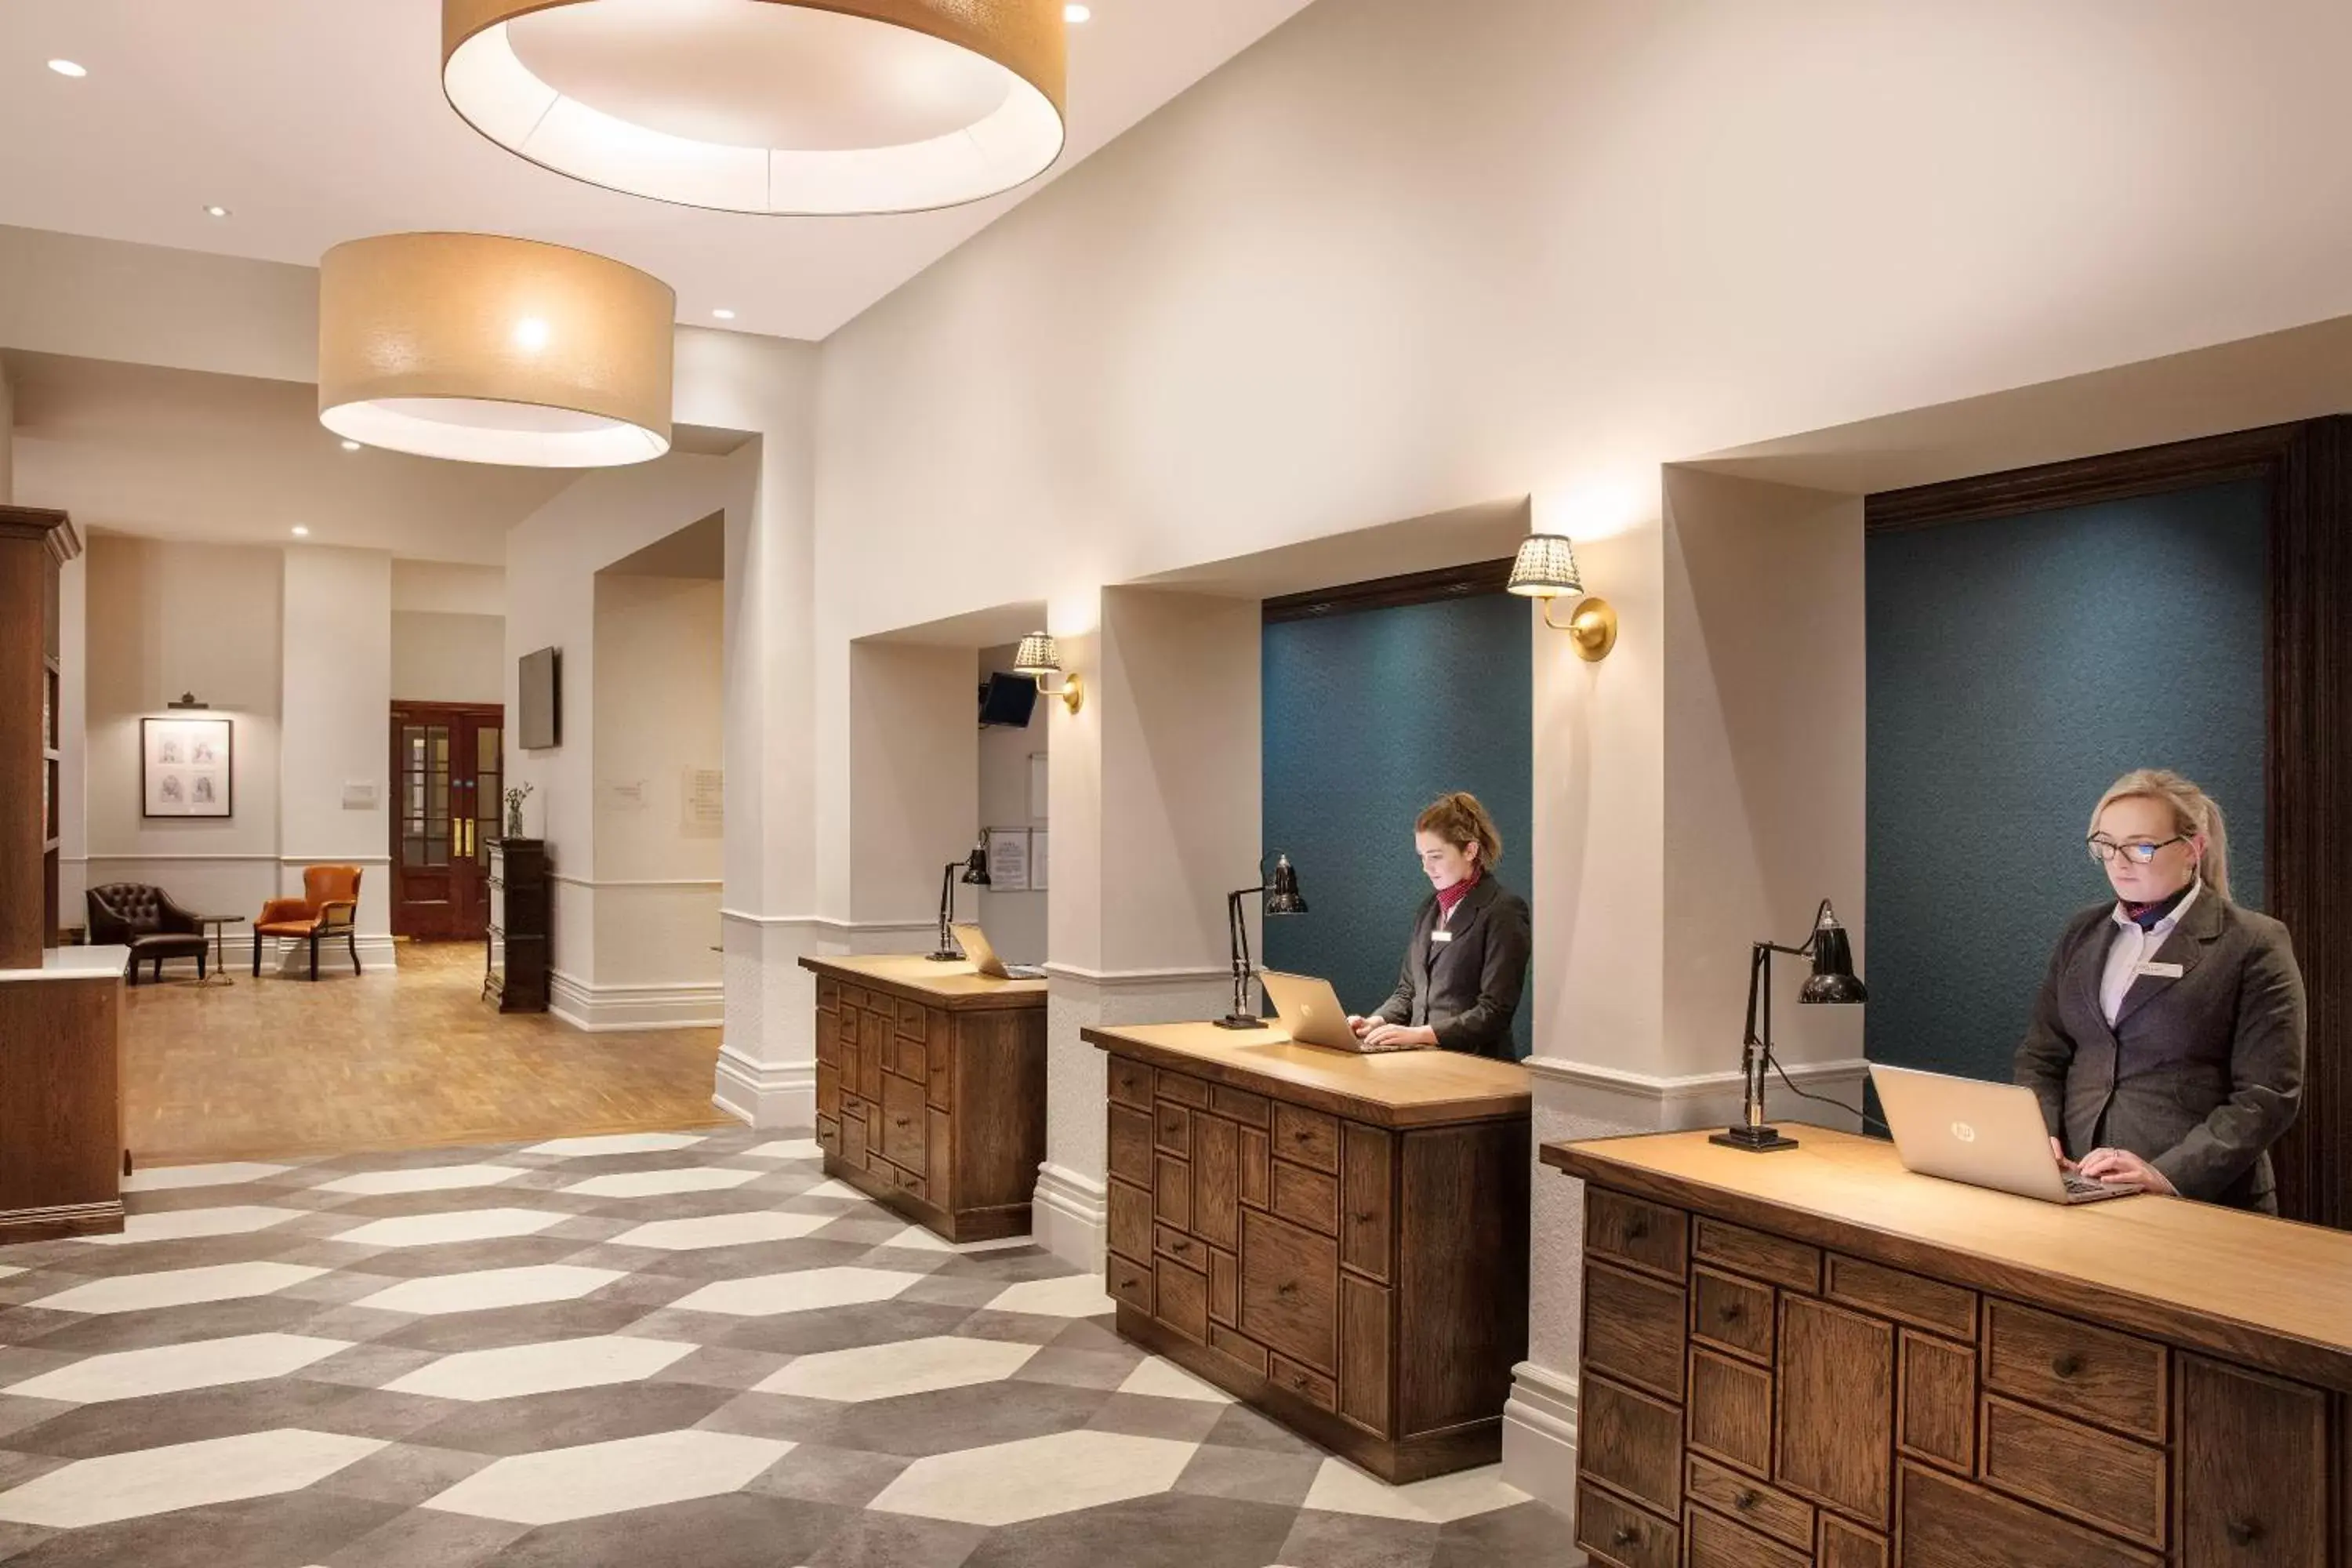 Lobby or reception, Lobby/Reception in Leonardo Hotel Cardiff - Formerly Jurys Inn